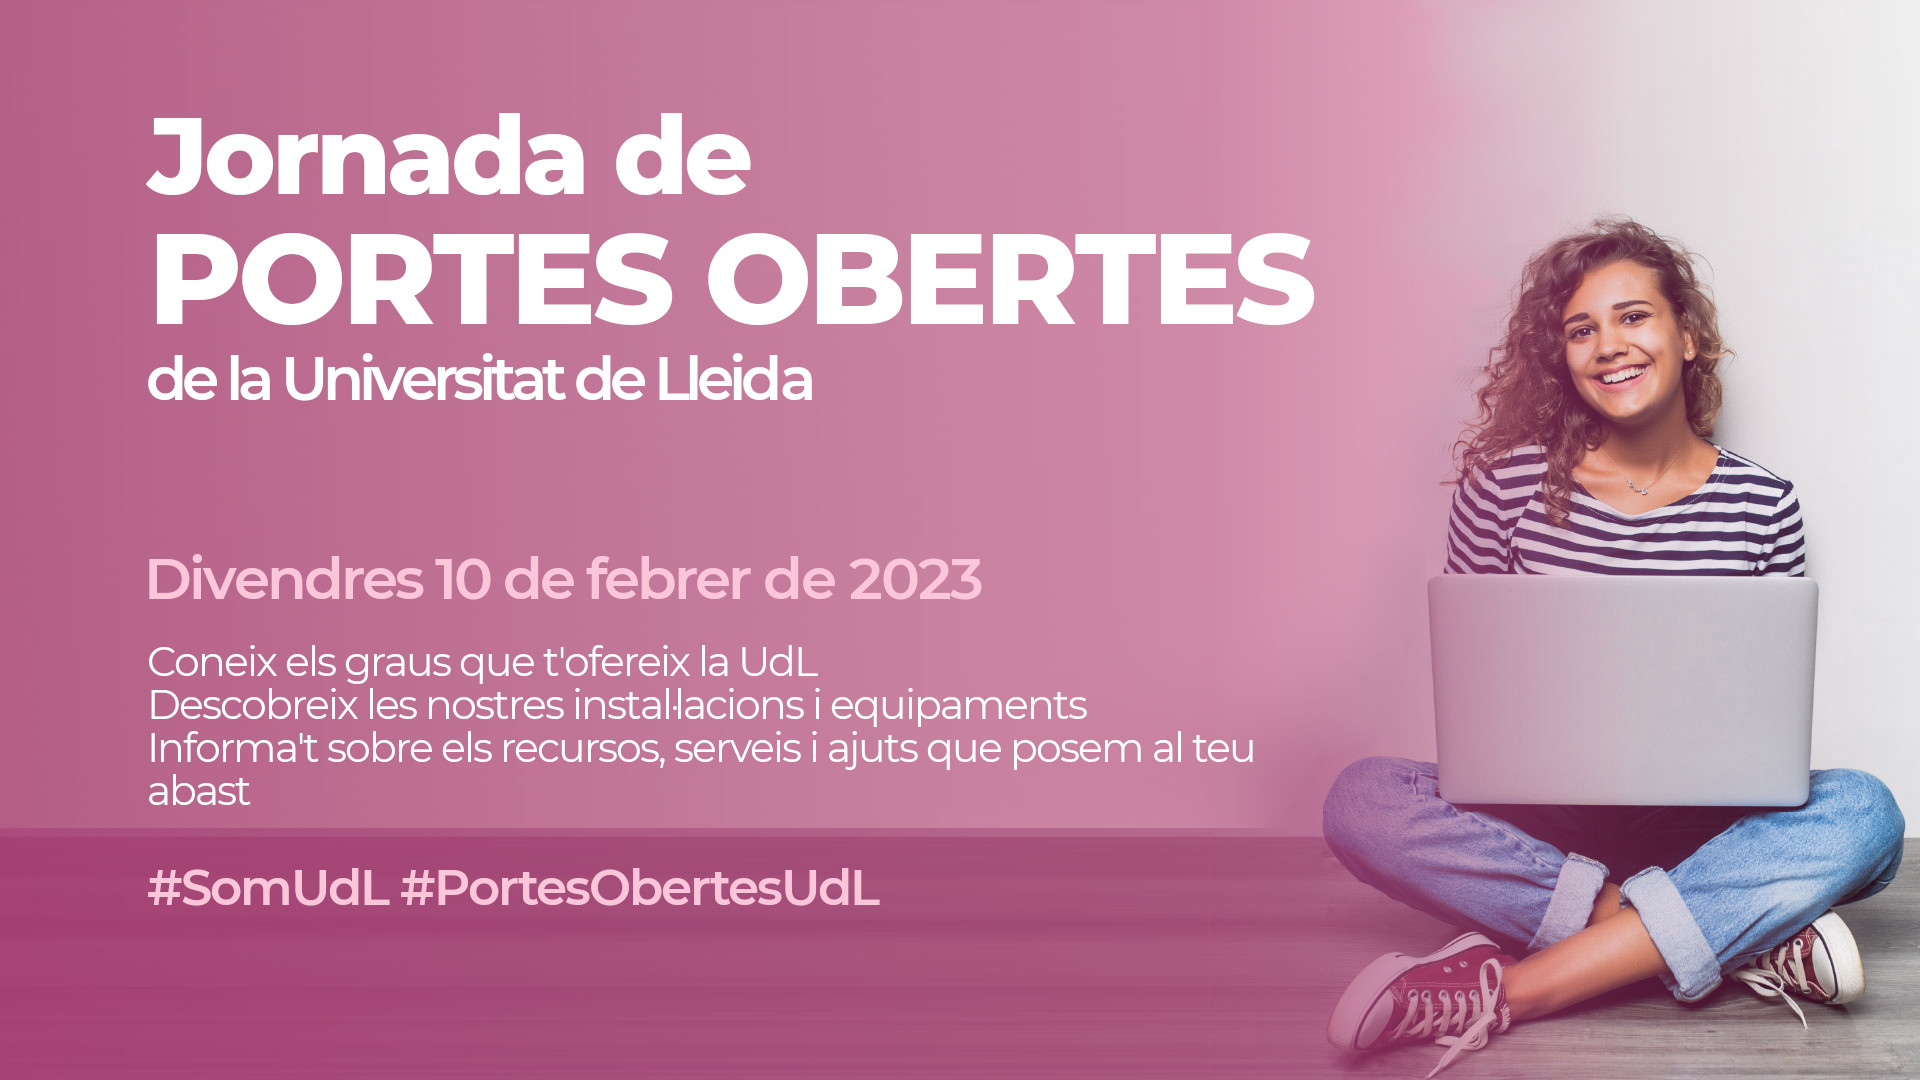 Jornada de Portes Obertes a la Universitat de Lleida